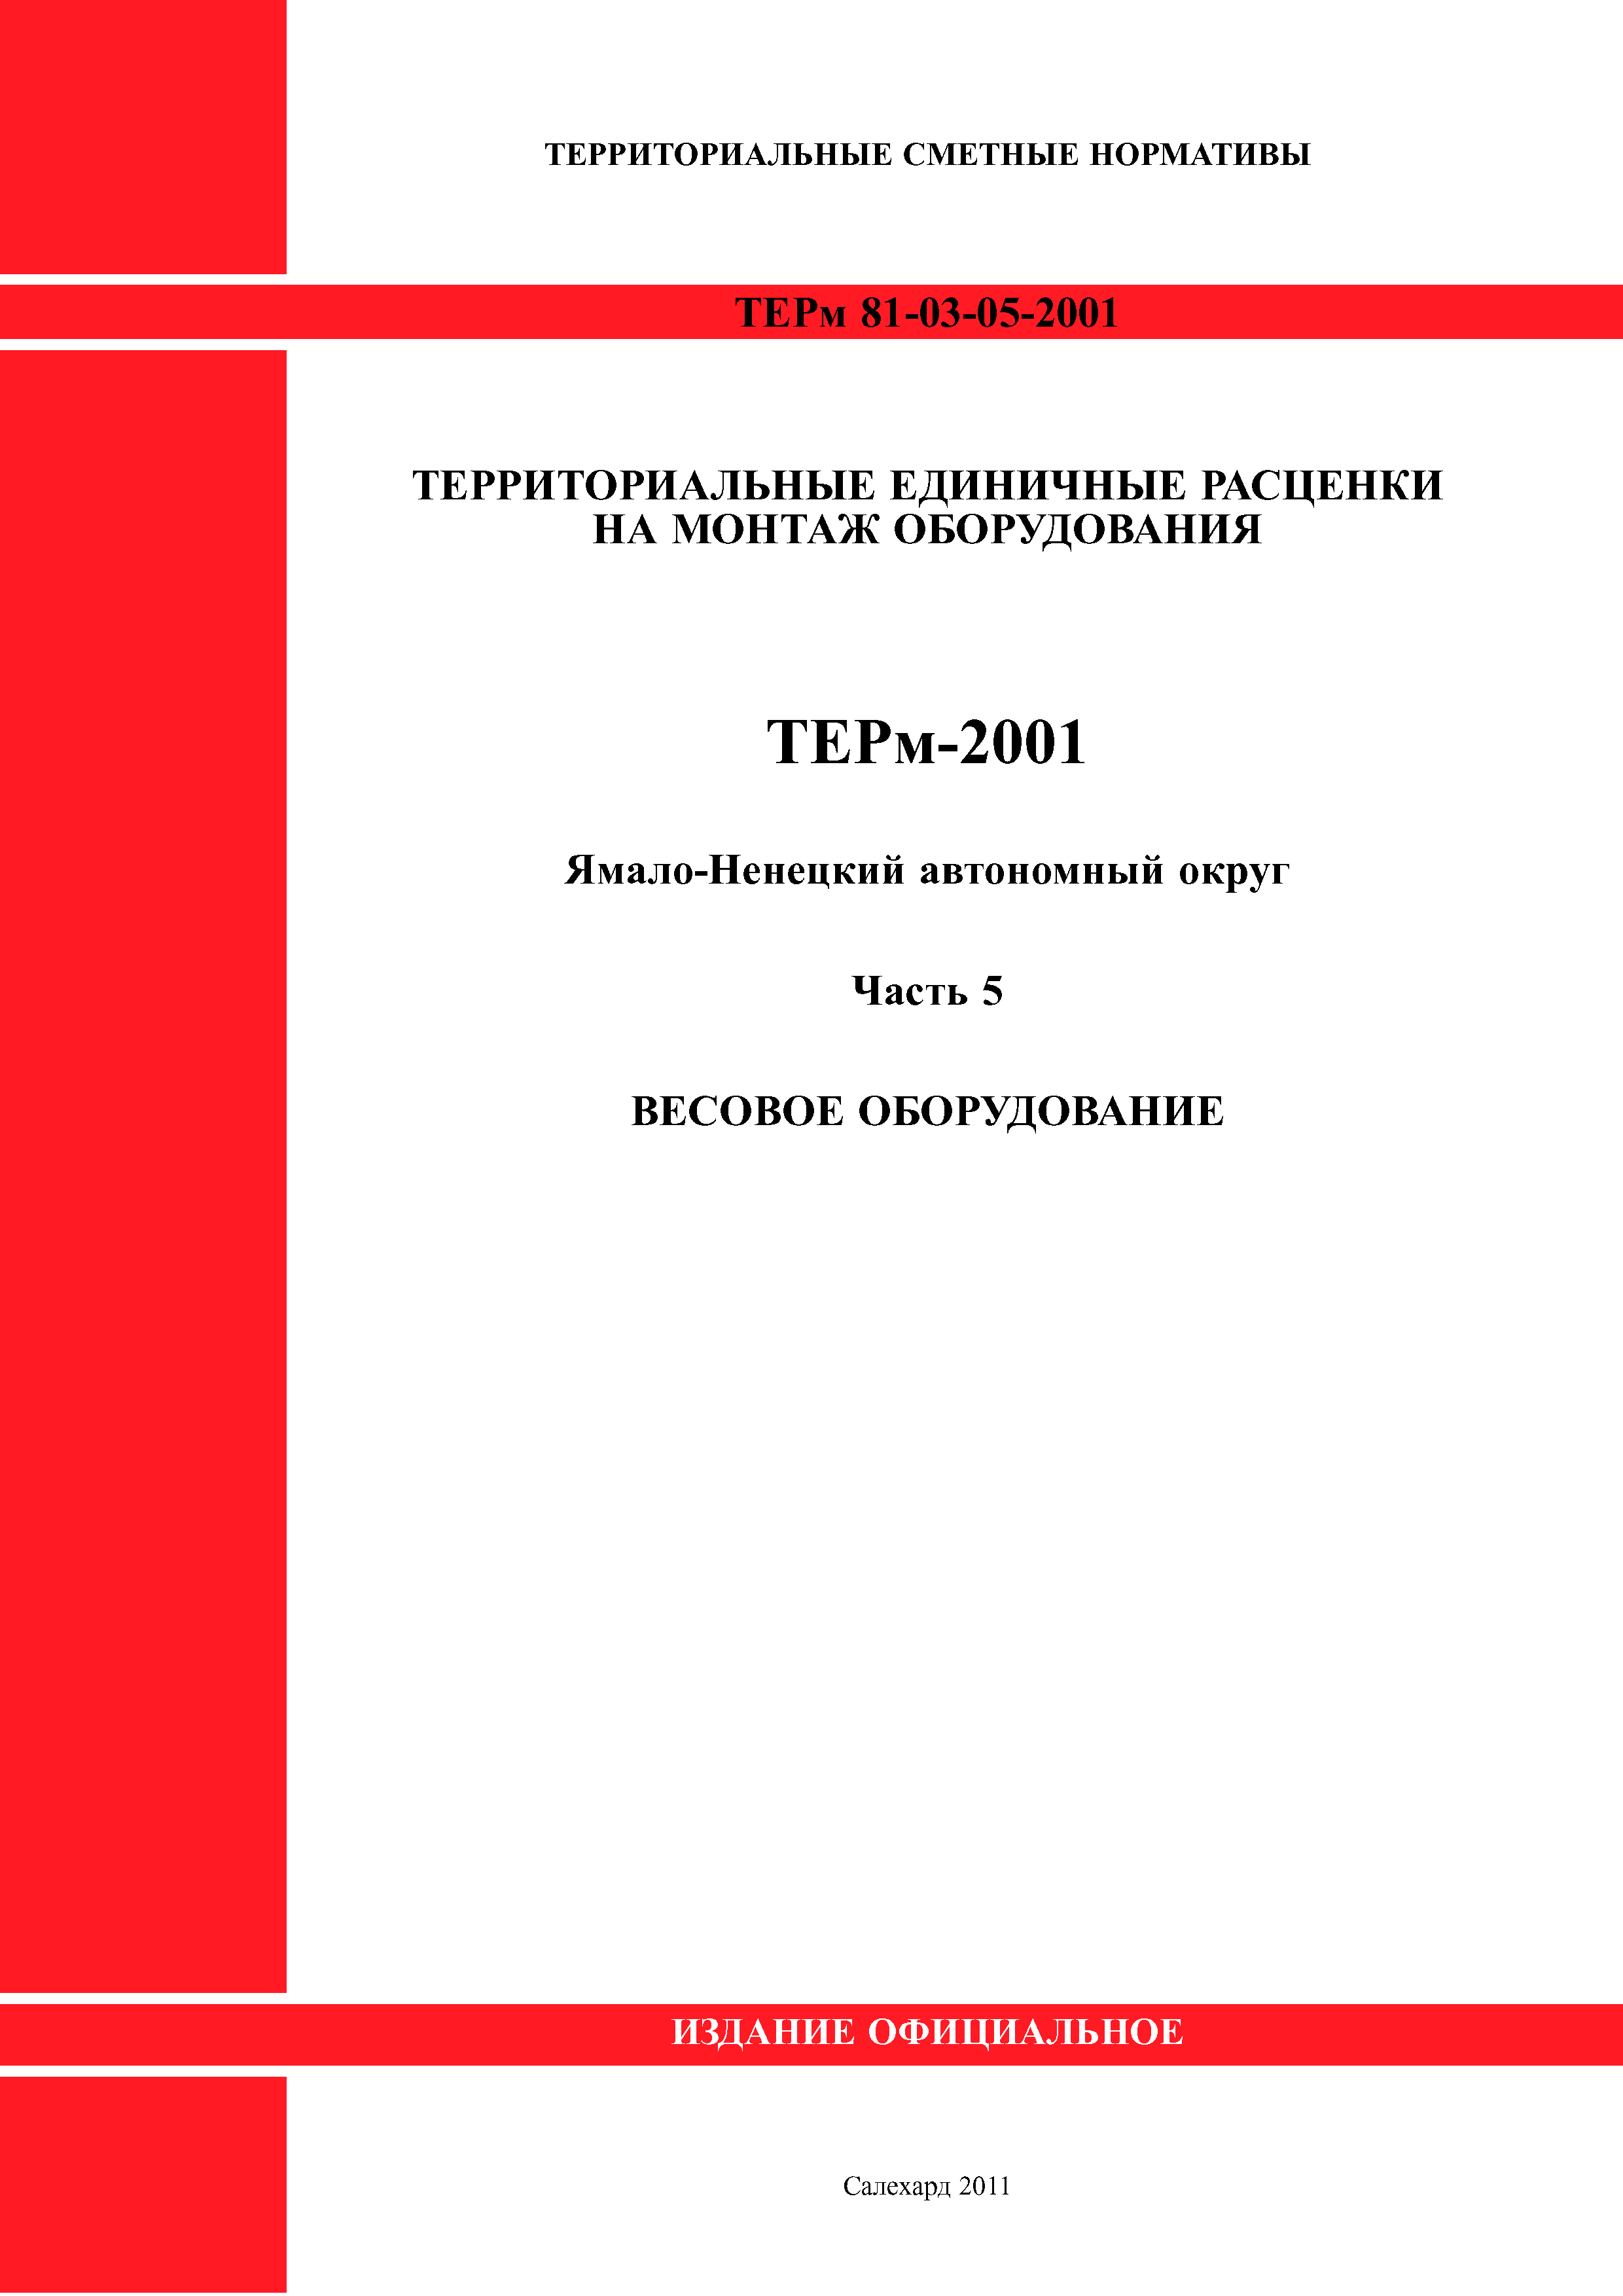 ТЕРм Ямало-Ненецкий автономный округ 05-2001